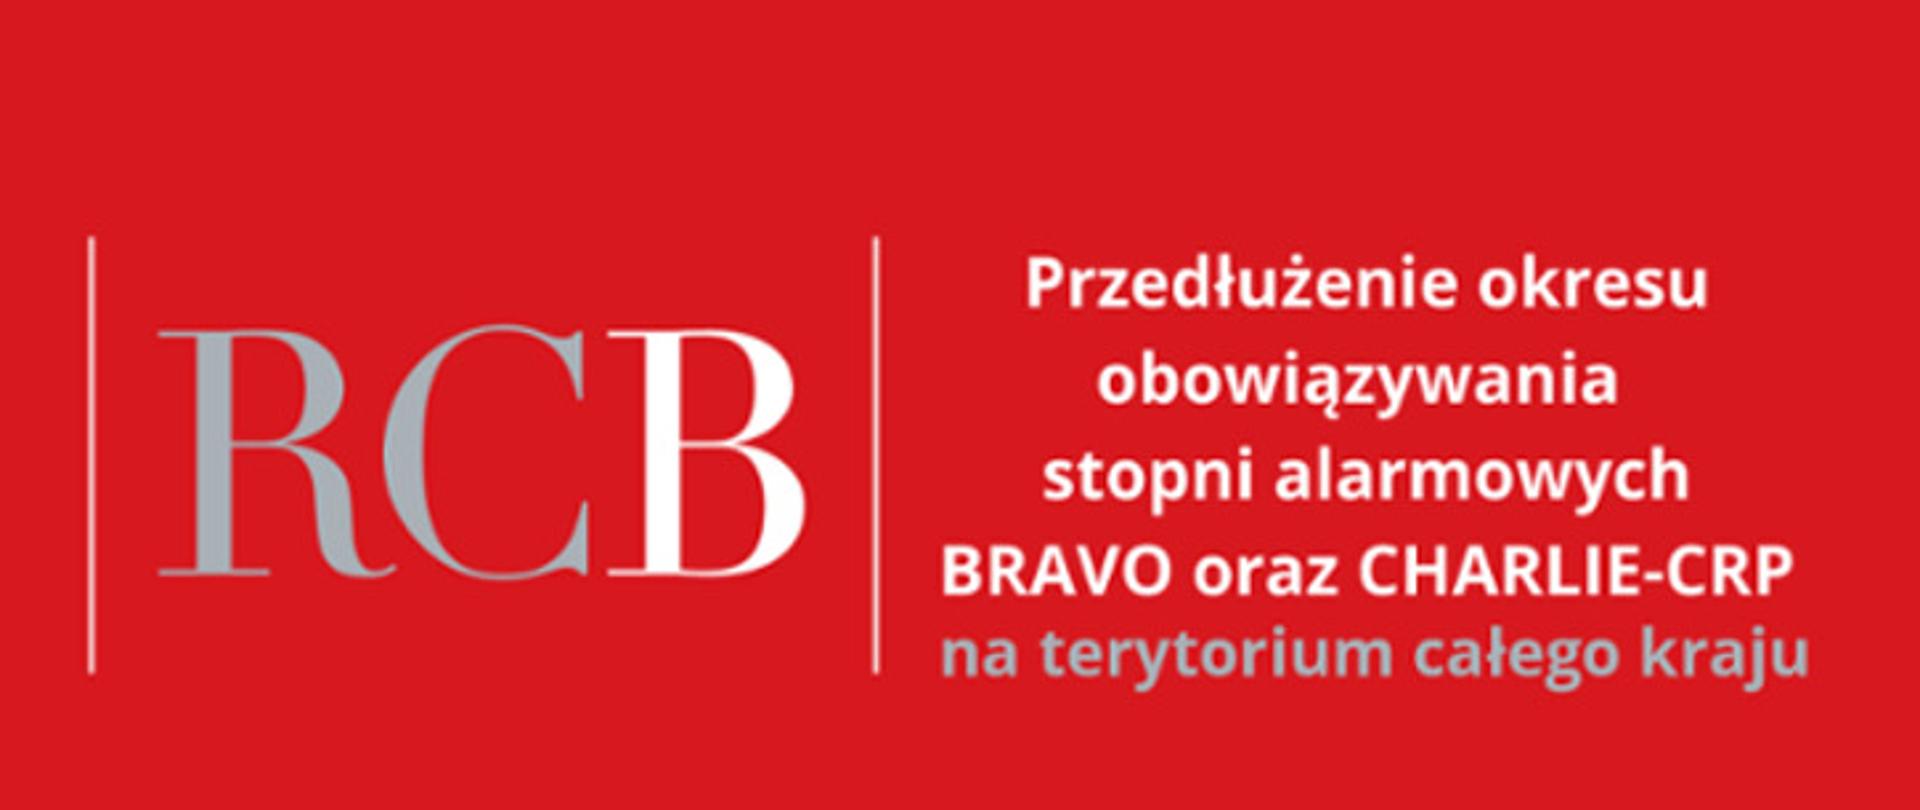 Plakat informacyjny z napisami, informujący o przedłużeniu stopni alarmowych Bravo oraz Charlie-Crp na czerwonym tle